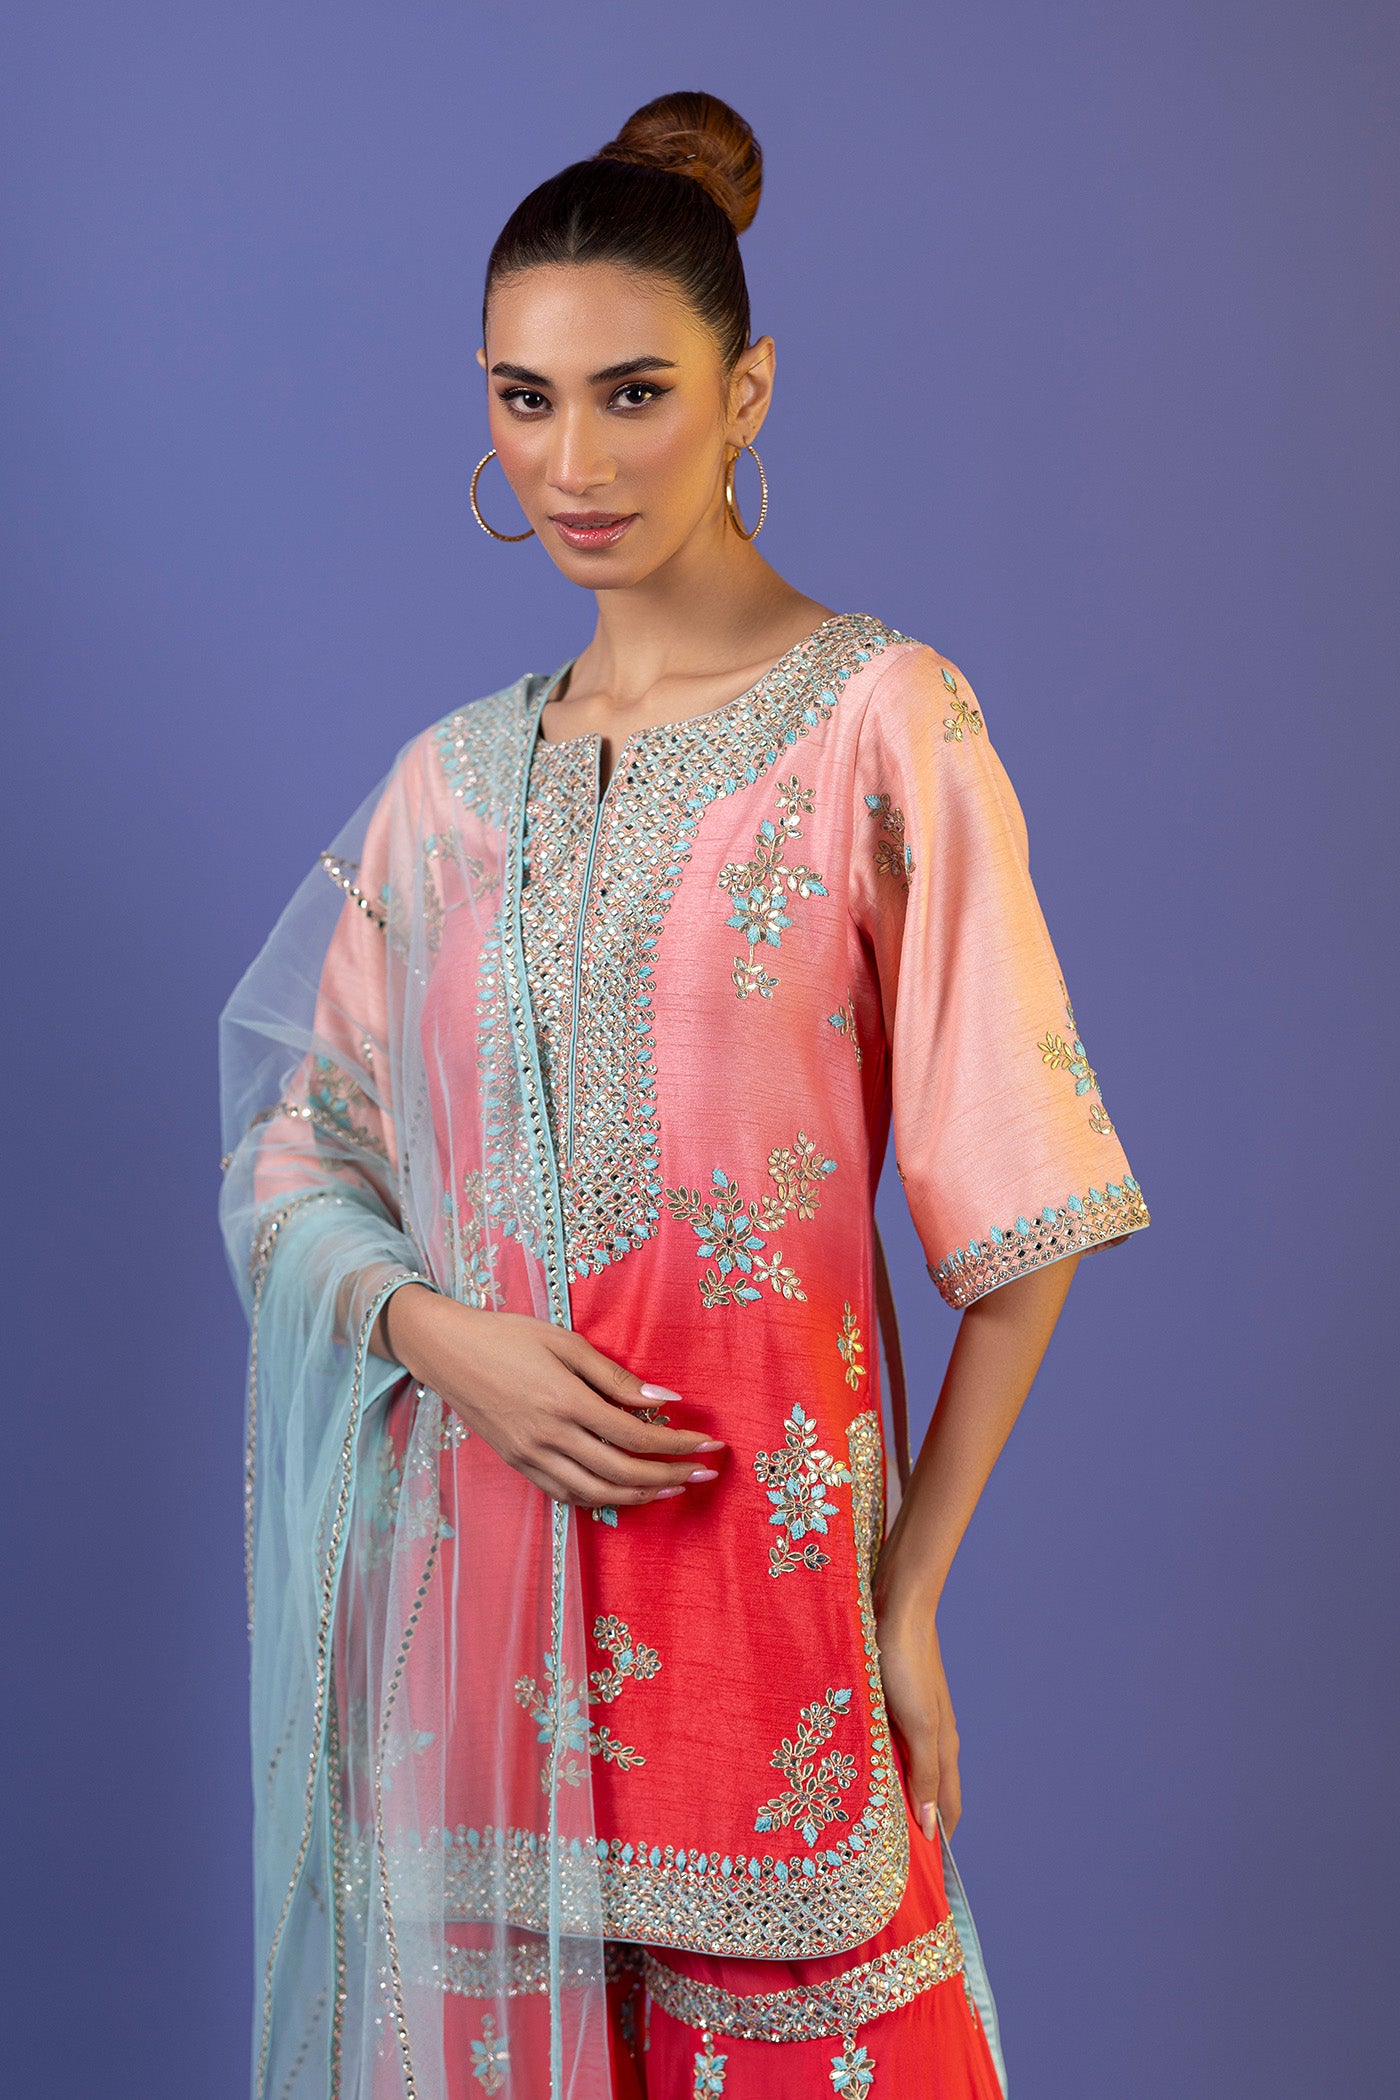 Raw Silk Gharara In Pink With Kundan And Dori Work